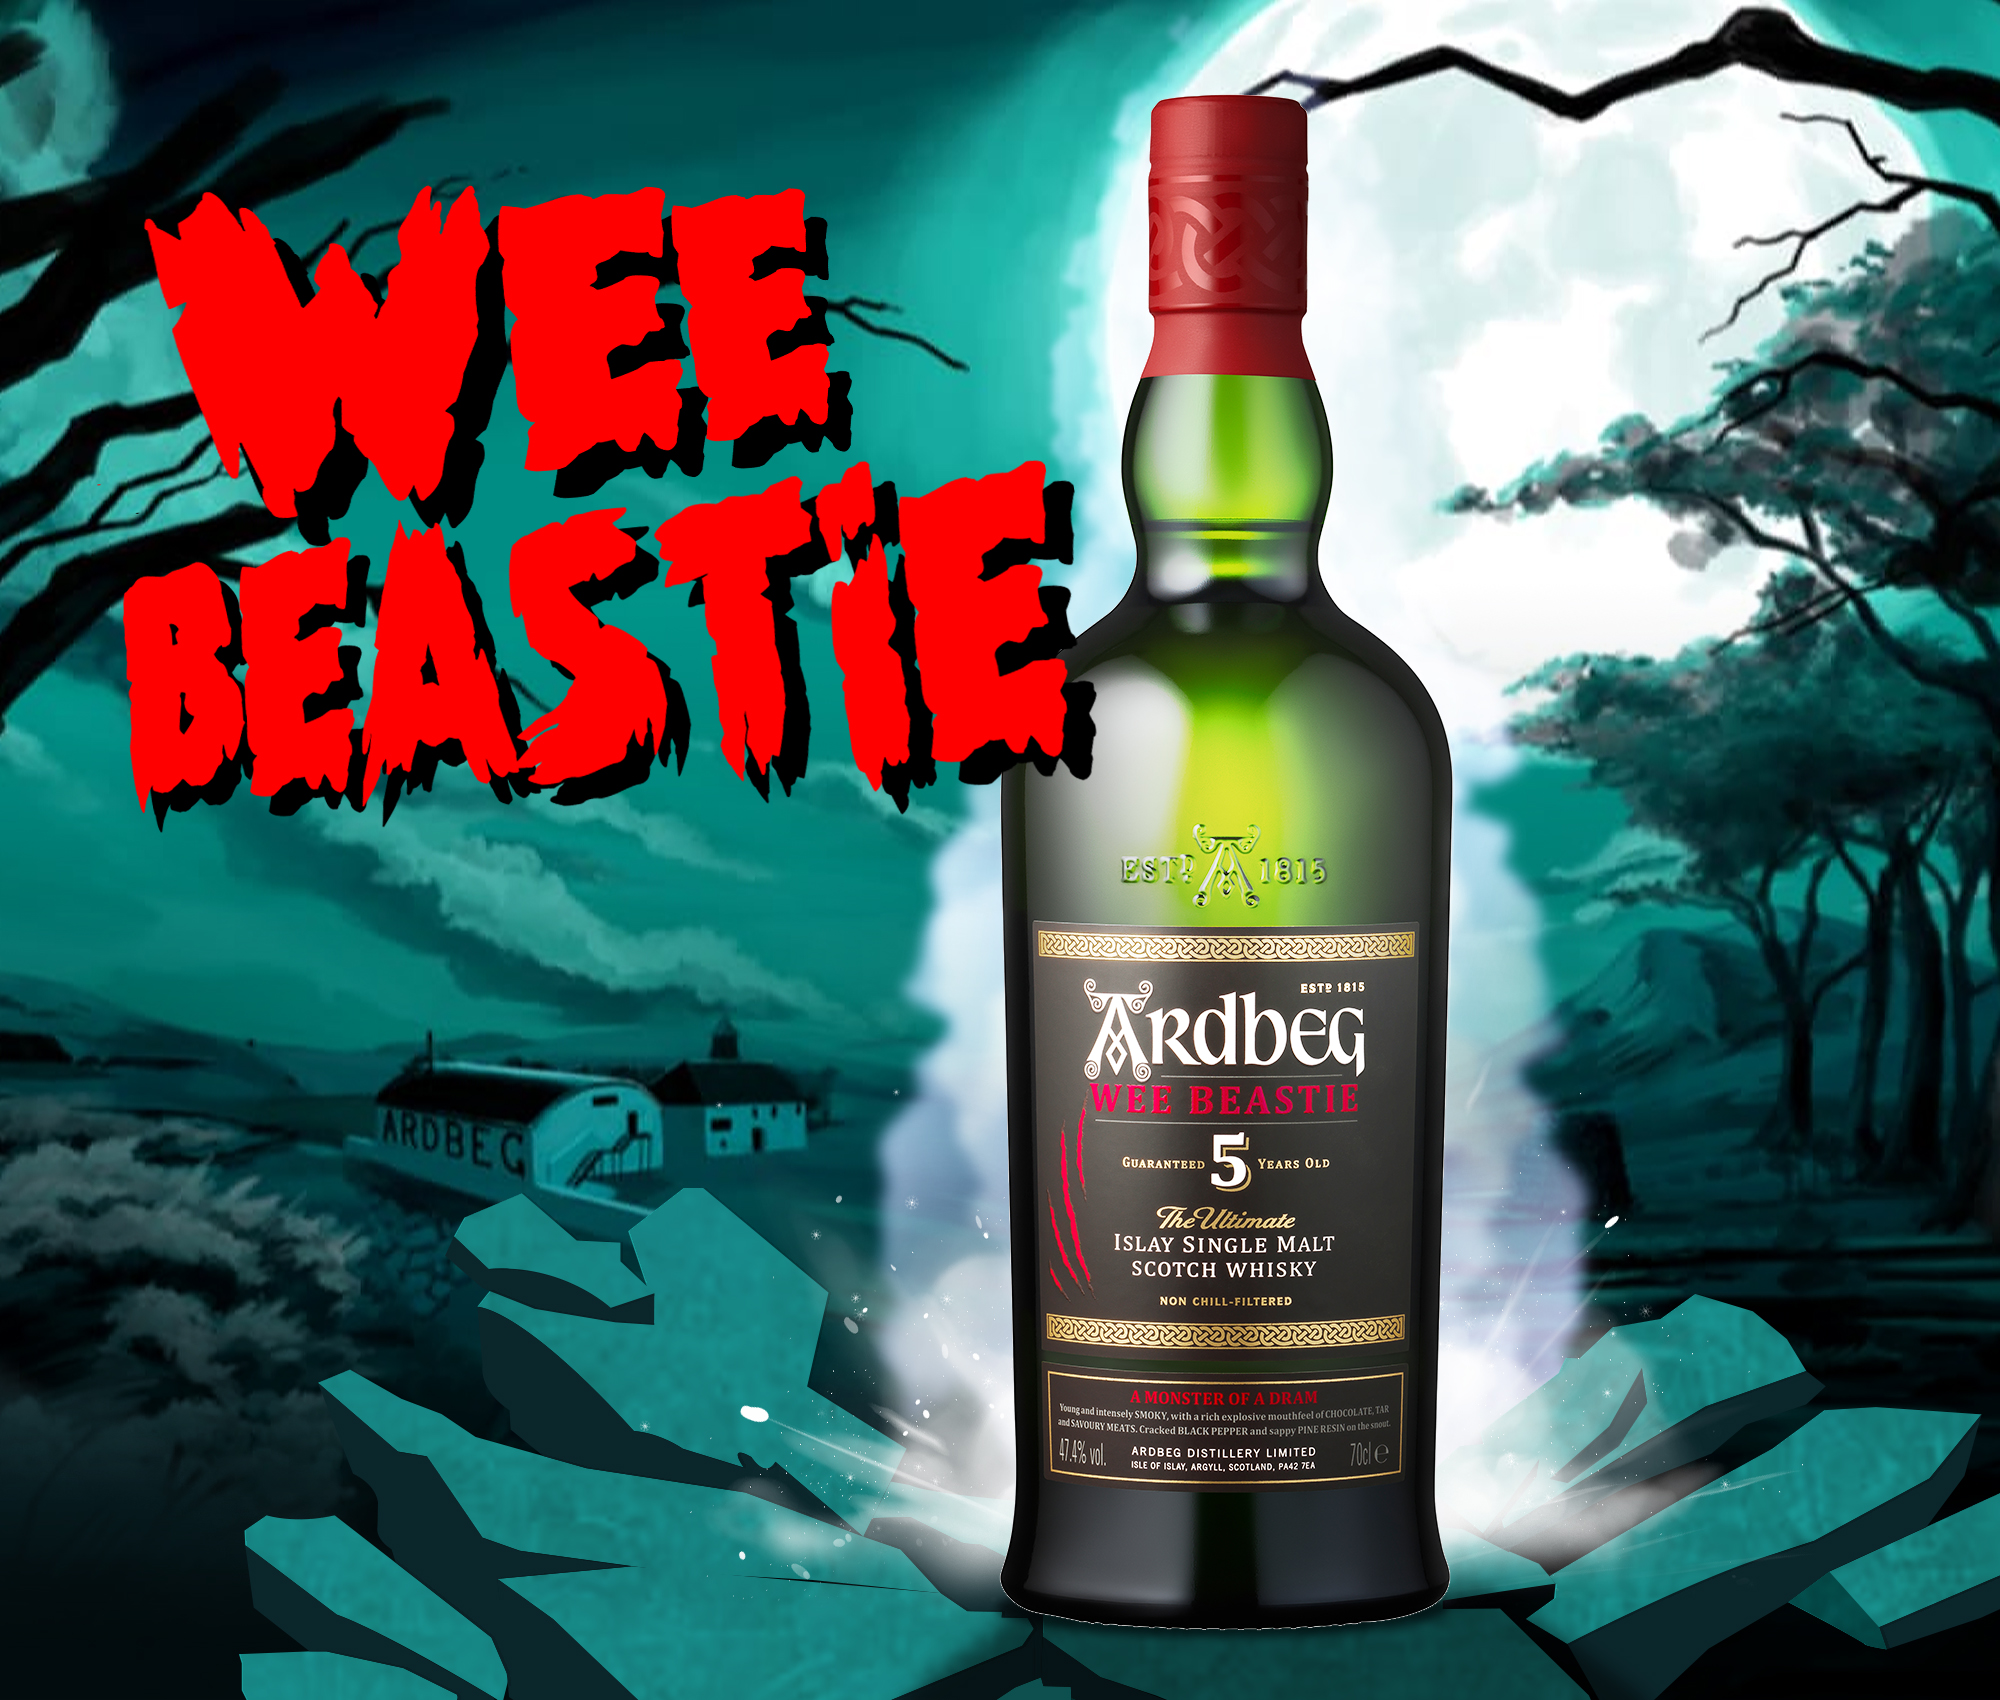 Ardbeg Wee Beastie - Coming soon!